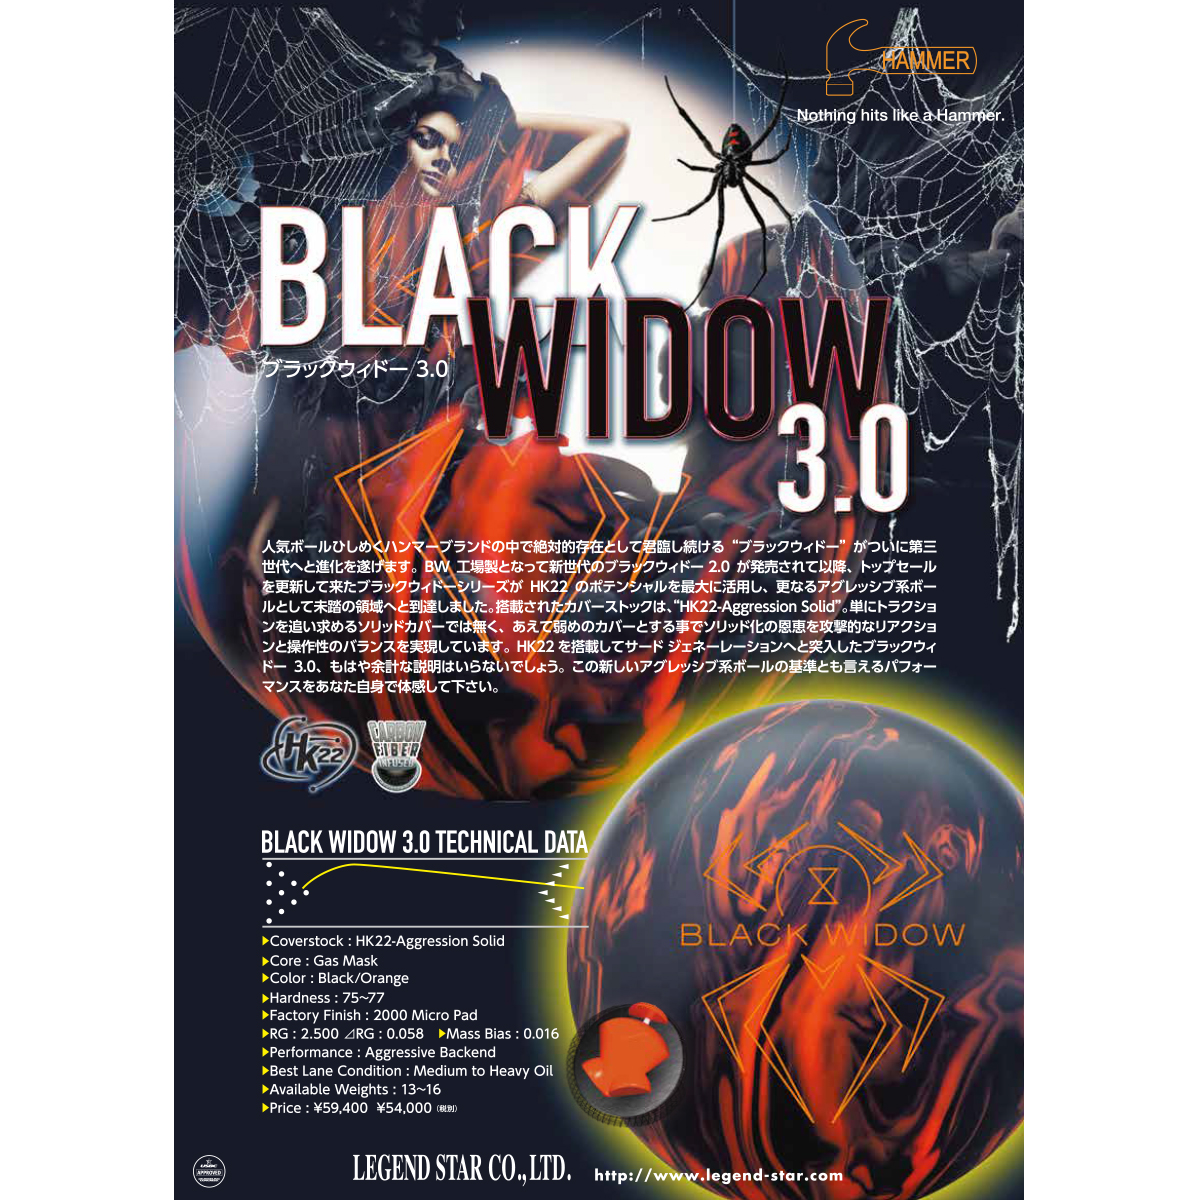 (ハンマー)ブラックウィドー3.0